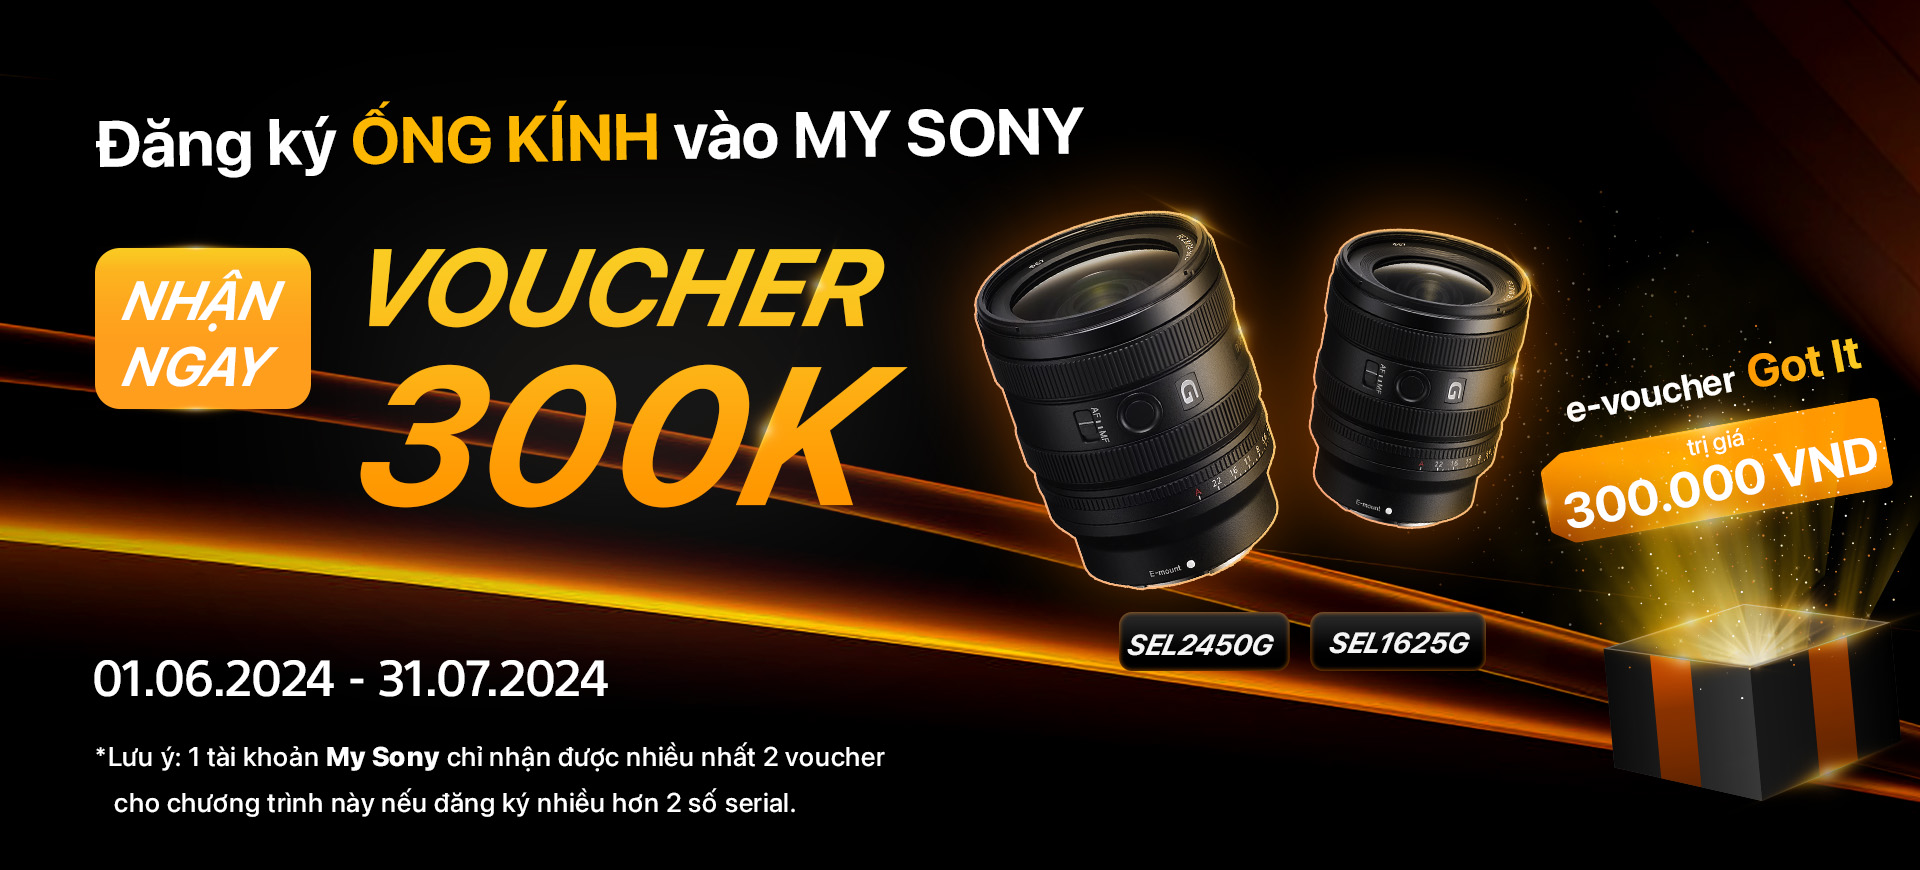 Chương trình tặng e-voucher Got It khi mua ống kính SEL2450G, SEL1625G và đăng ký My Sony